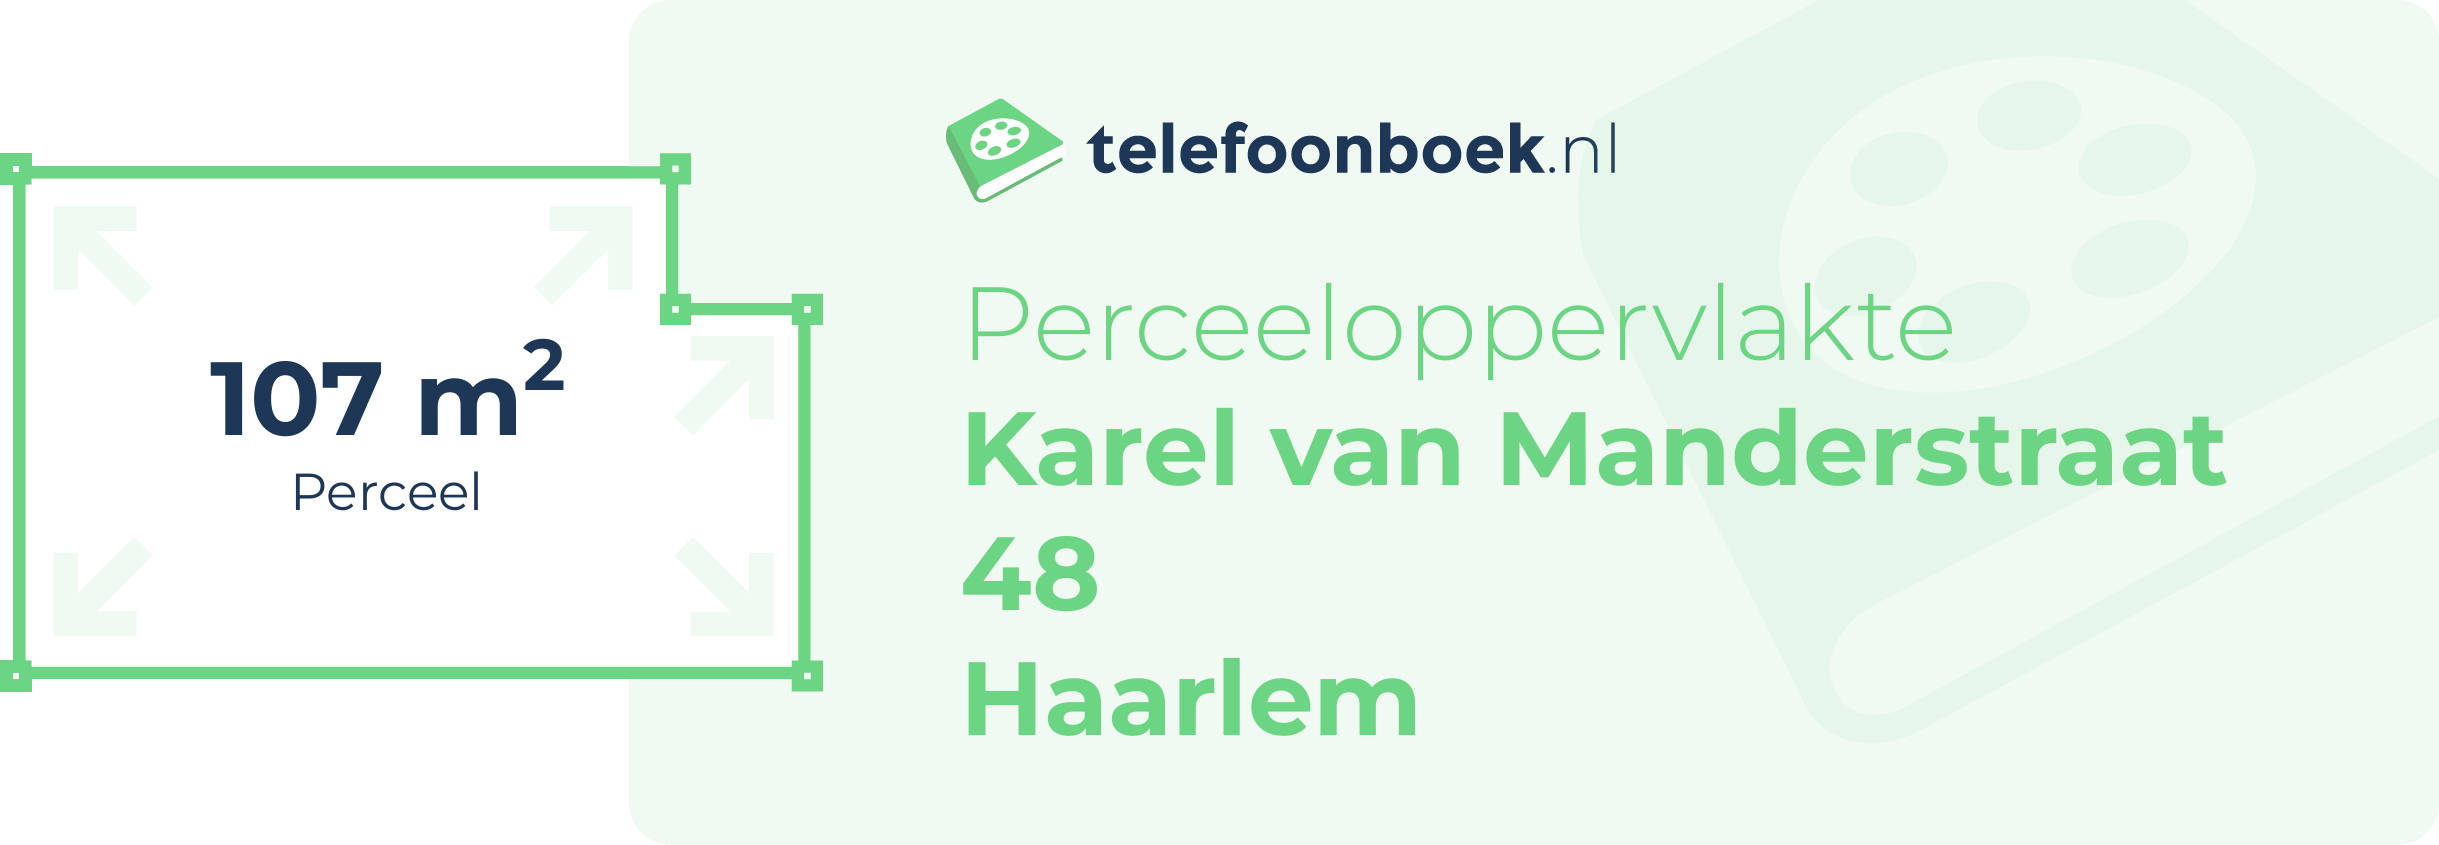 Perceeloppervlakte Karel Van Manderstraat 48 Haarlem